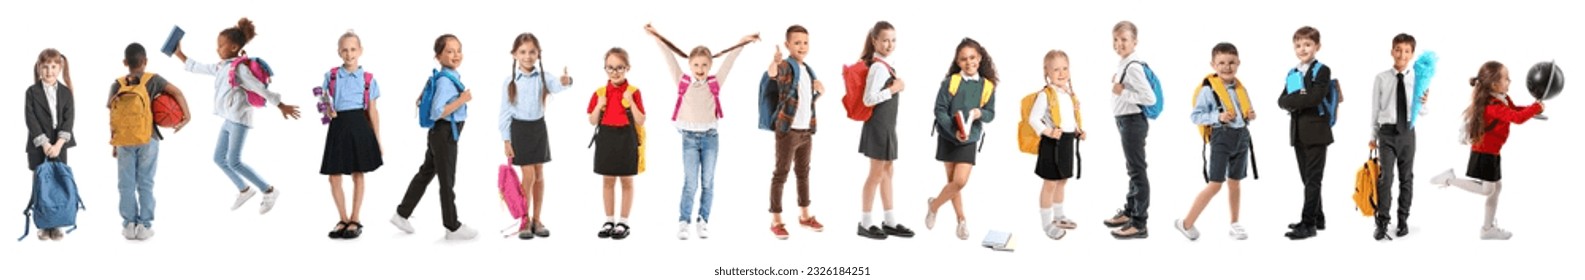 Set of cute schoolchildren on white background